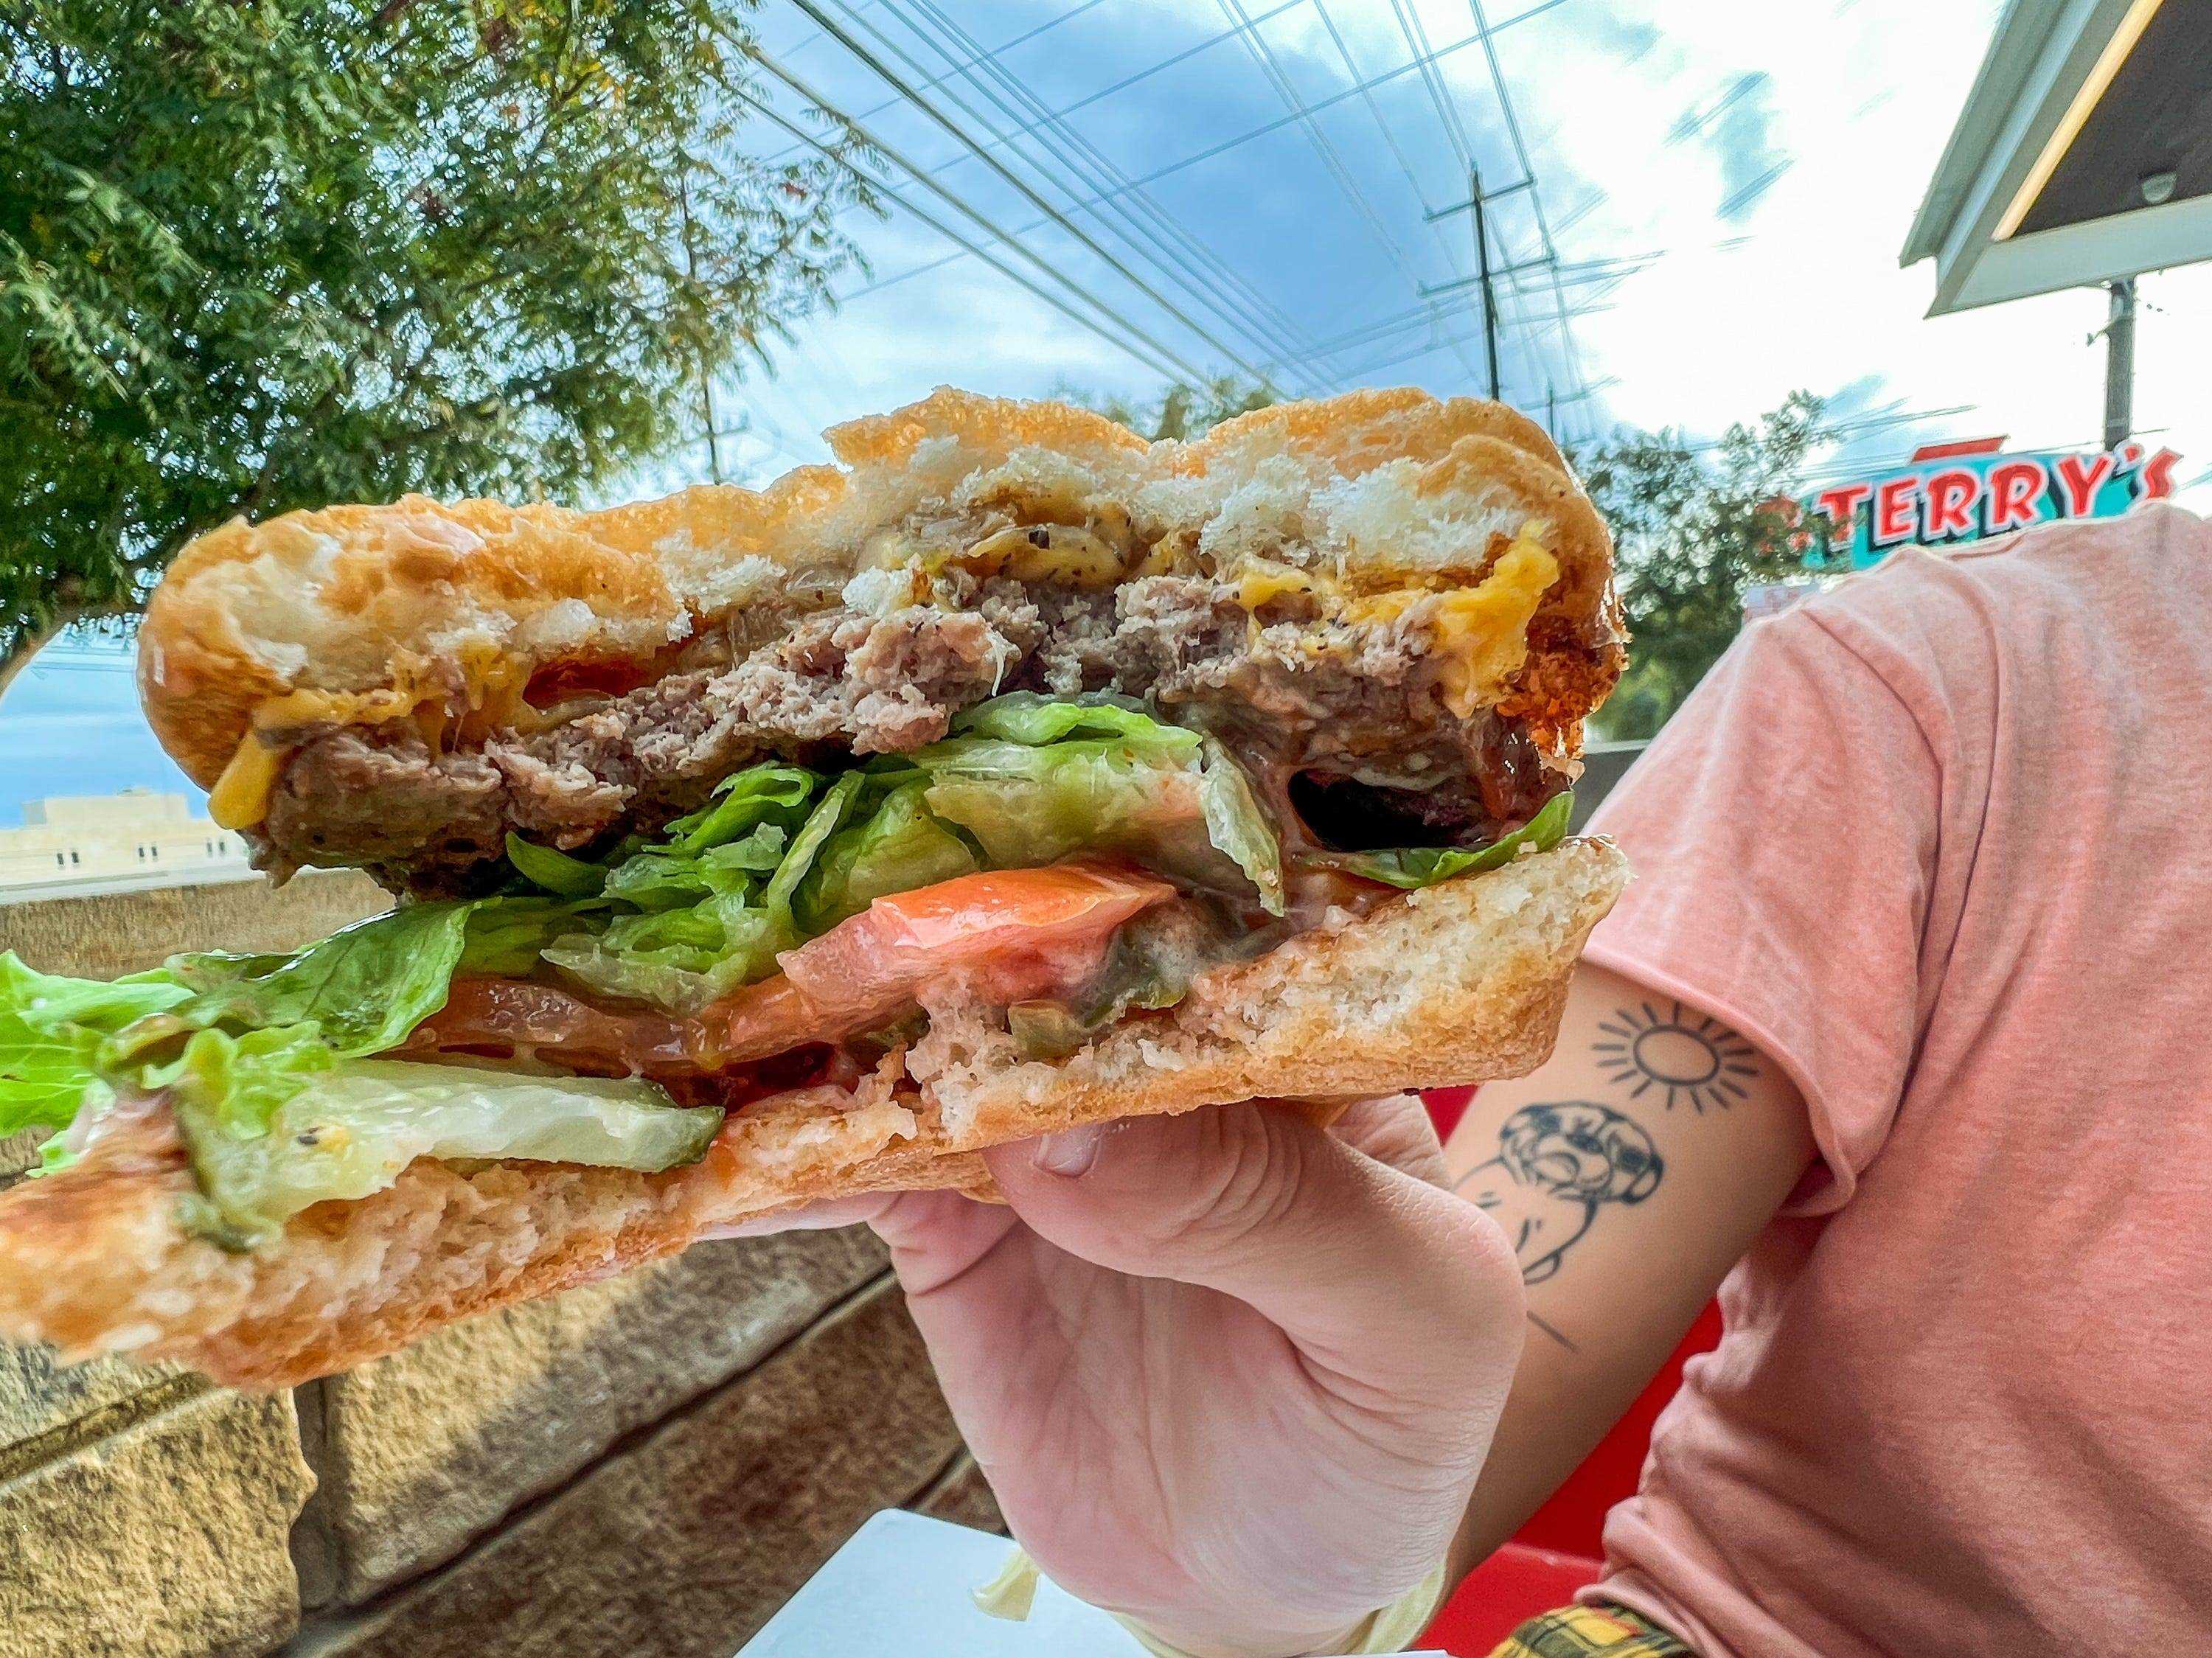 Der Autor zeigt den Burger, nachdem er hineingebissen hat